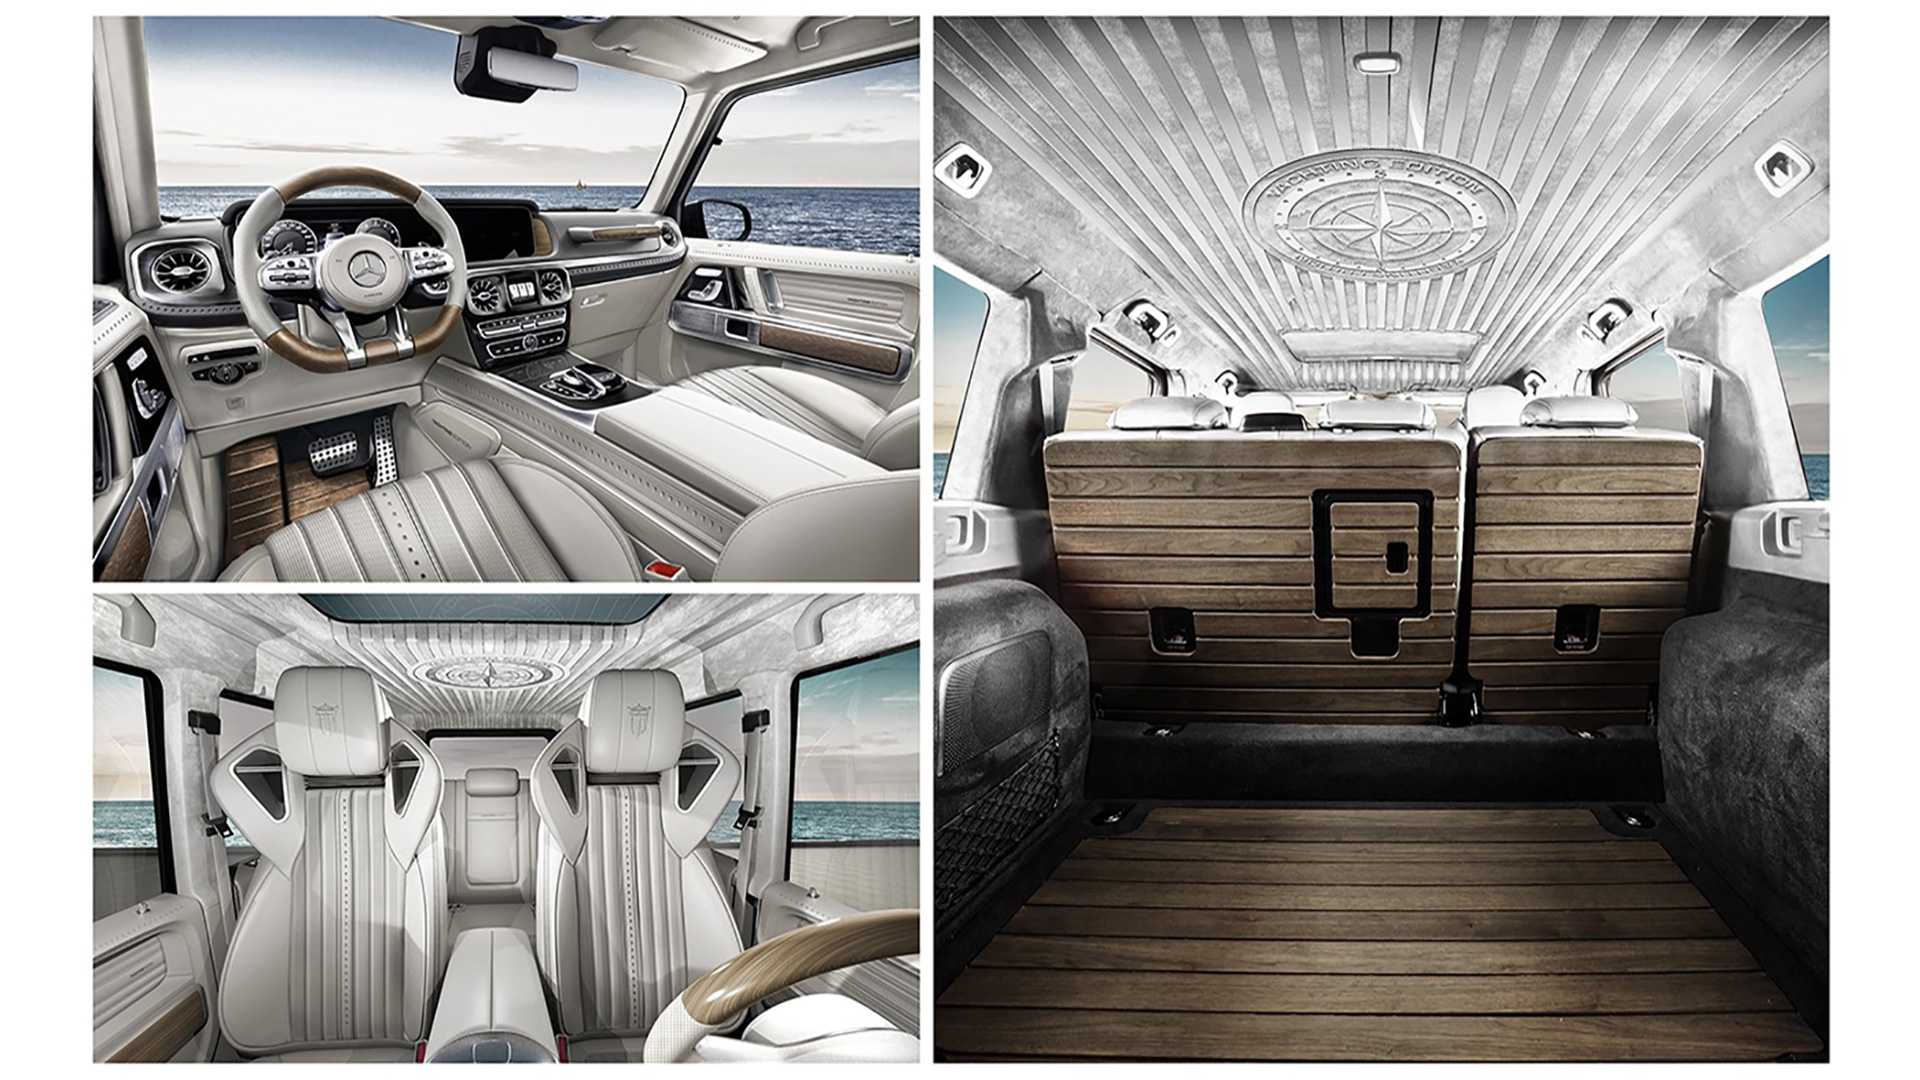 Mercedes-AMG G63 độ nội thất gỗ như siêu du thuyền - Cảm hứng mới cho đại gia Việt - Ảnh 4.